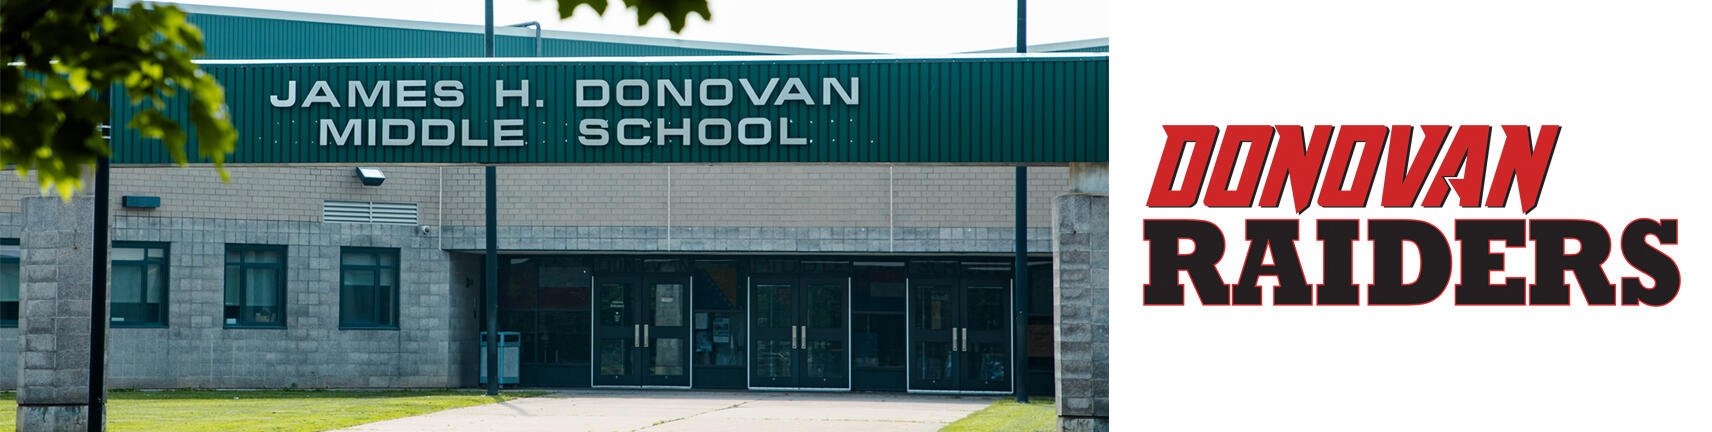 Foto del edificio de la escuela Donovan y el logotipo de los Donovan Raiders